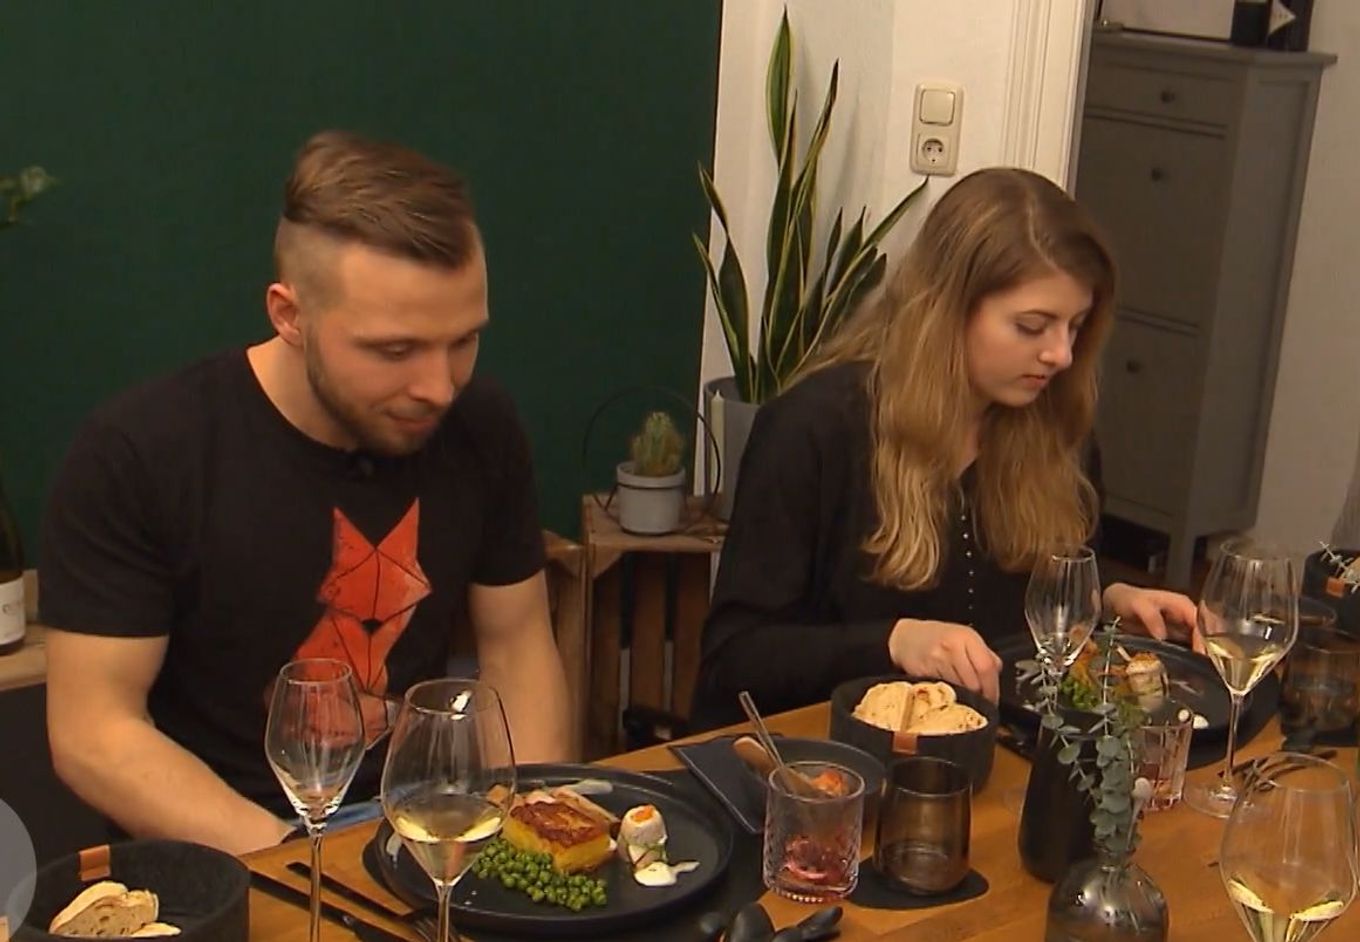 'Die Leute werden mich dafür hassen': 'Dinner'-Koch Richard verrät Wochenziel